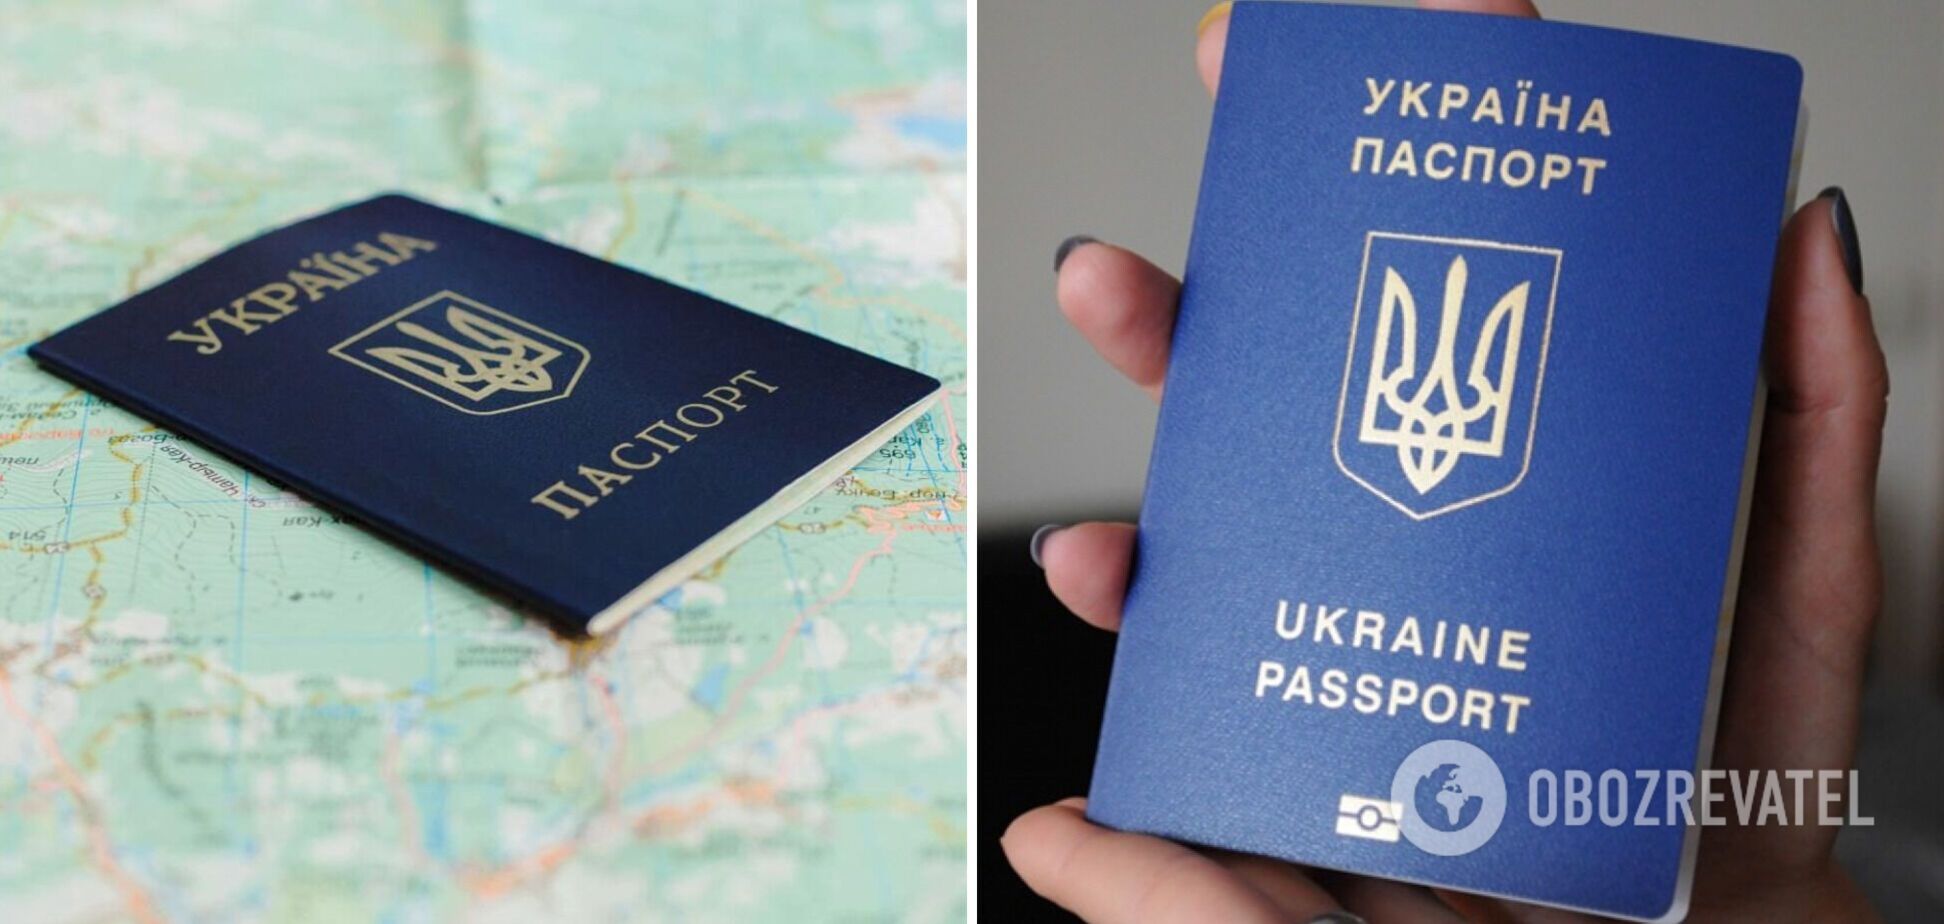 Оформление внутреннего и загранпаспортов во время военного положения: в Украине изменили процедуру